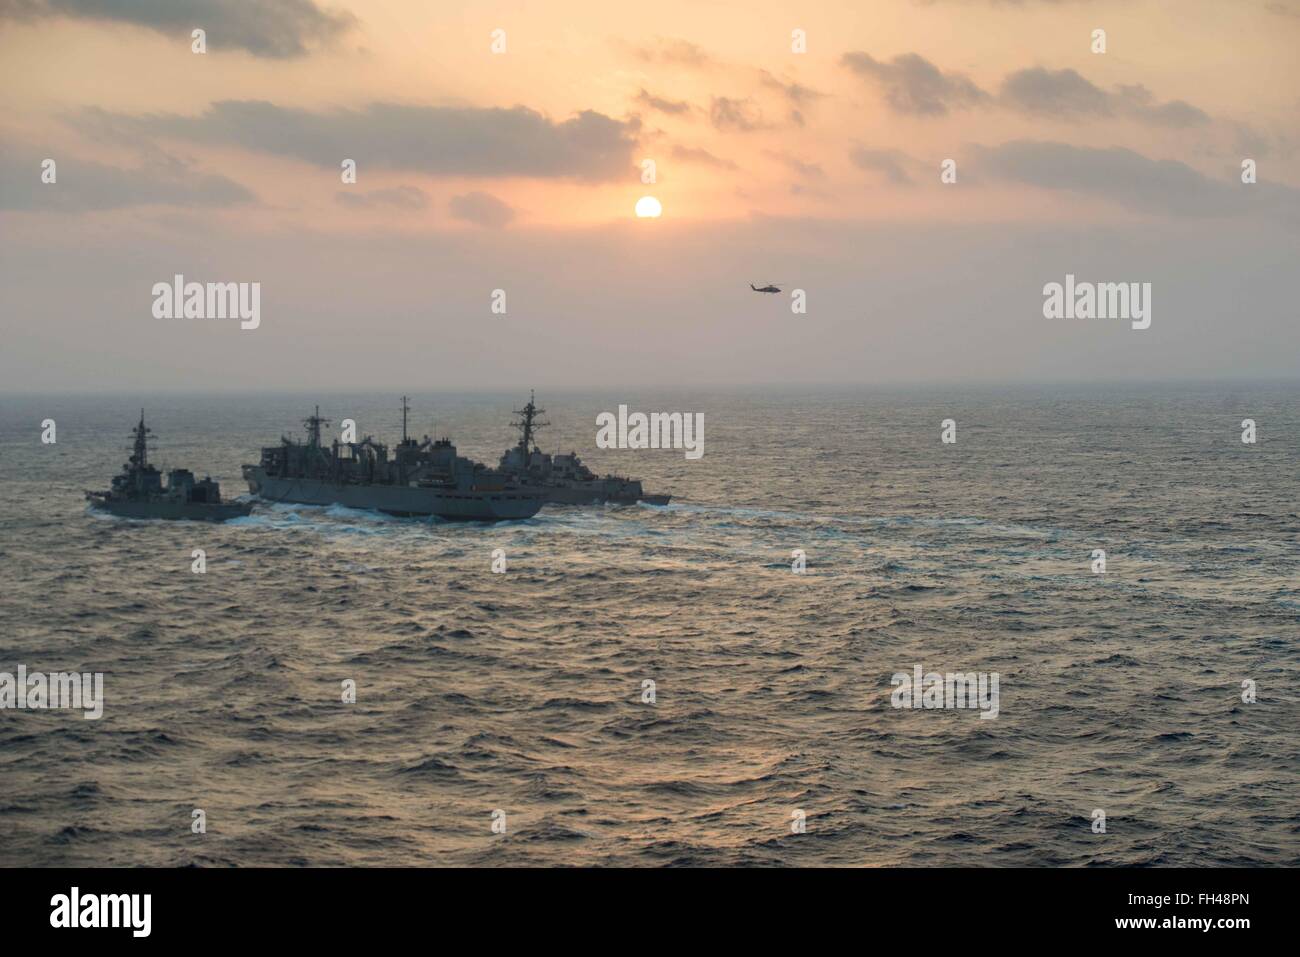 Mare delle Filippine (feb. 22, 2016) - Giapponese marittima Forza di Autodifesa Murasame-class destroyer JDS Samidare (DD-106) e visite-missile destroyer USS Stockdale (DDG 106) ricevere un sistema avanzato di miscela di biocarburanti il digiuno da combattere la nave appoggio USNS Ranieri (T-AOE 7) durante un rifornimento in mare. Fornire una forza di pronto il supporto di sicurezza e stabilità nella Indo-Asia-pacifico, John C. Stennis Strike gruppo è operativo come parte del grande parco verde su un pianificate regolarmente 7 Distribuzione flotta. Foto Stock